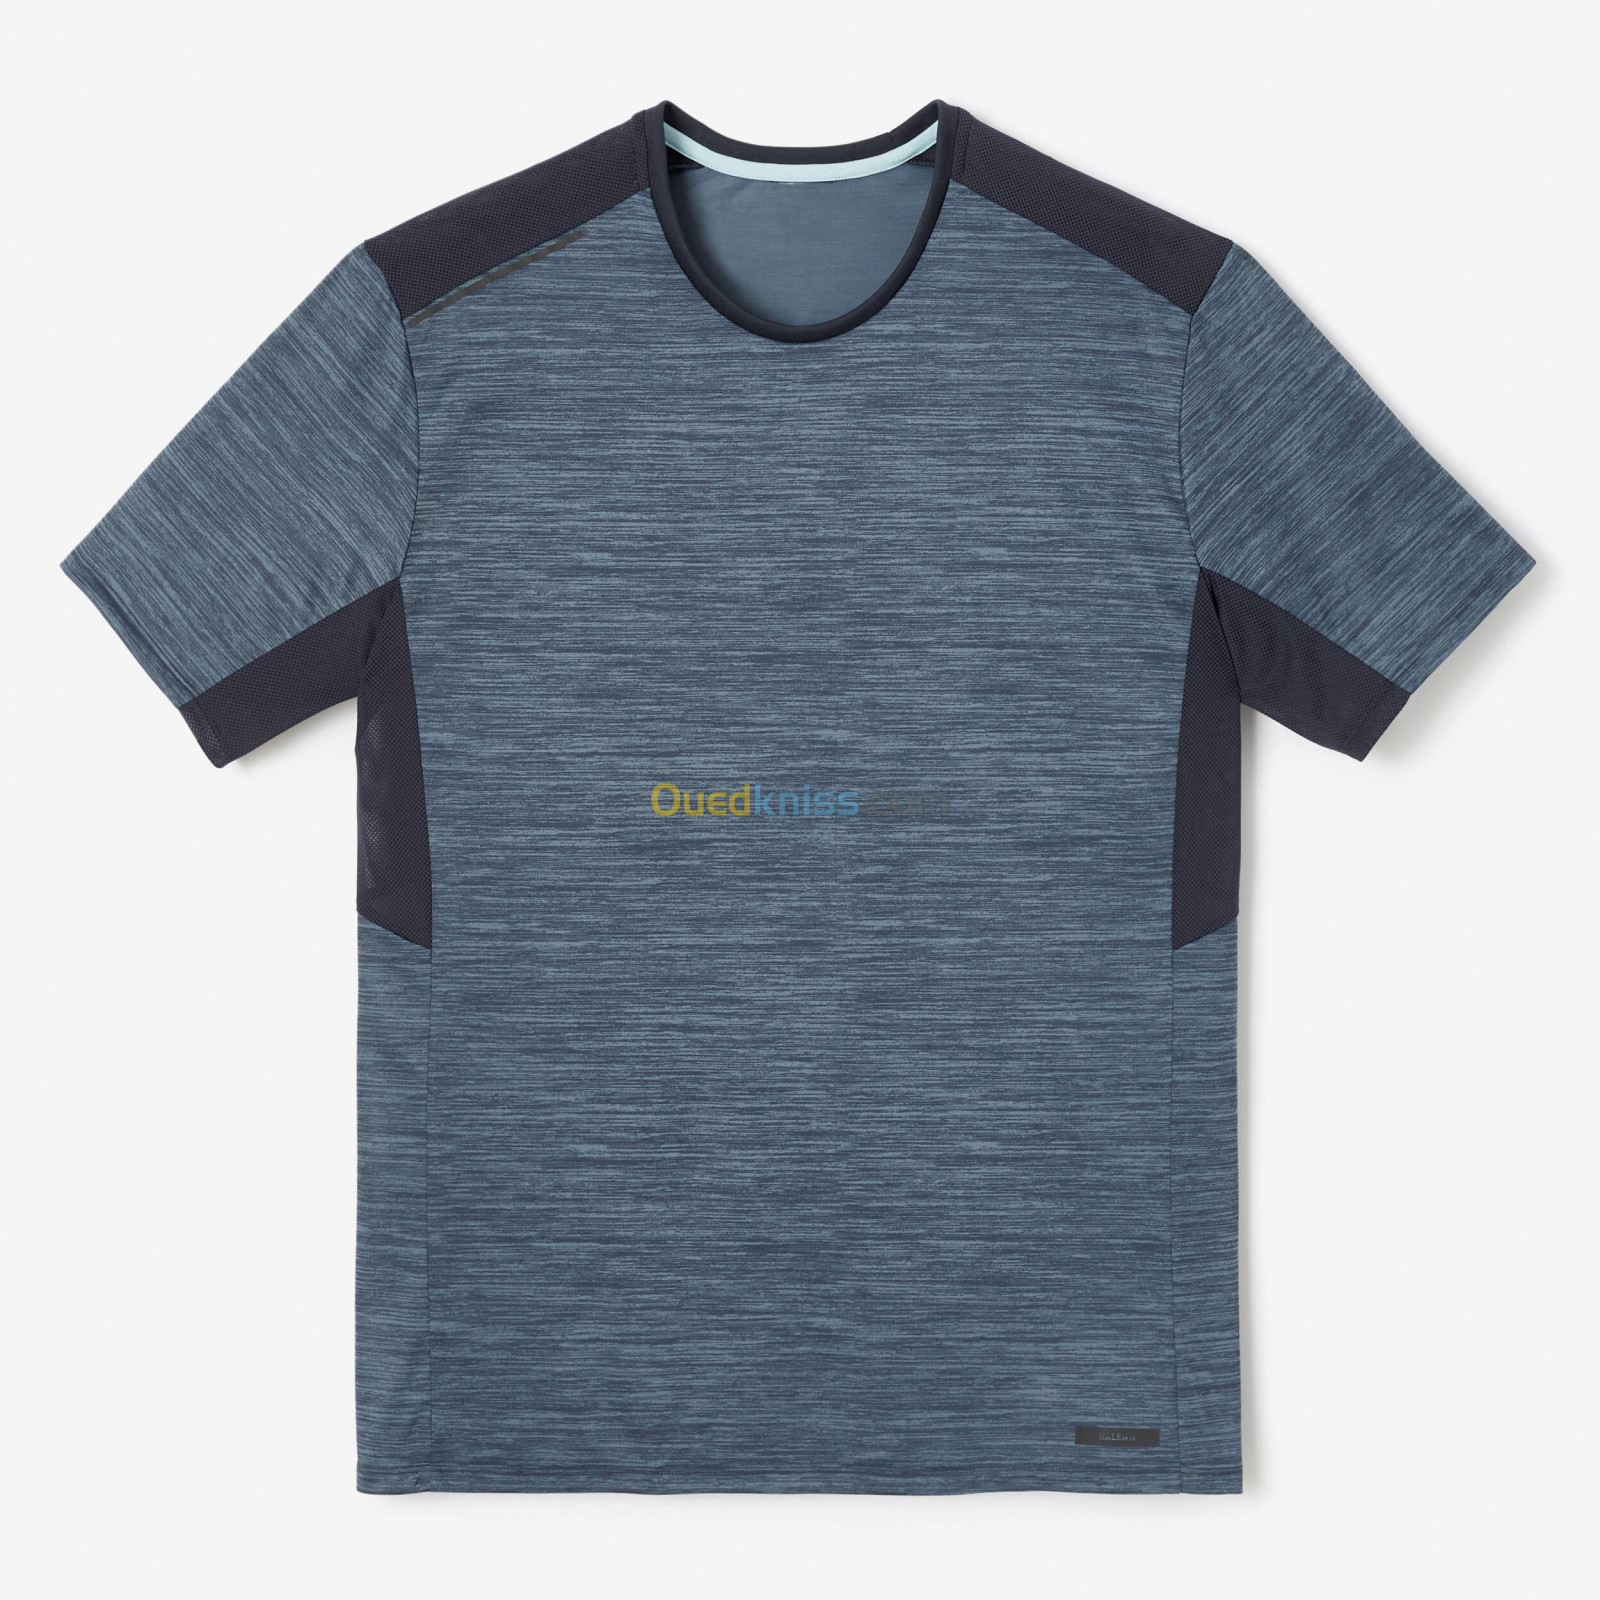 KALENJI T-shirt running respirant homme - Dry+ ivoire